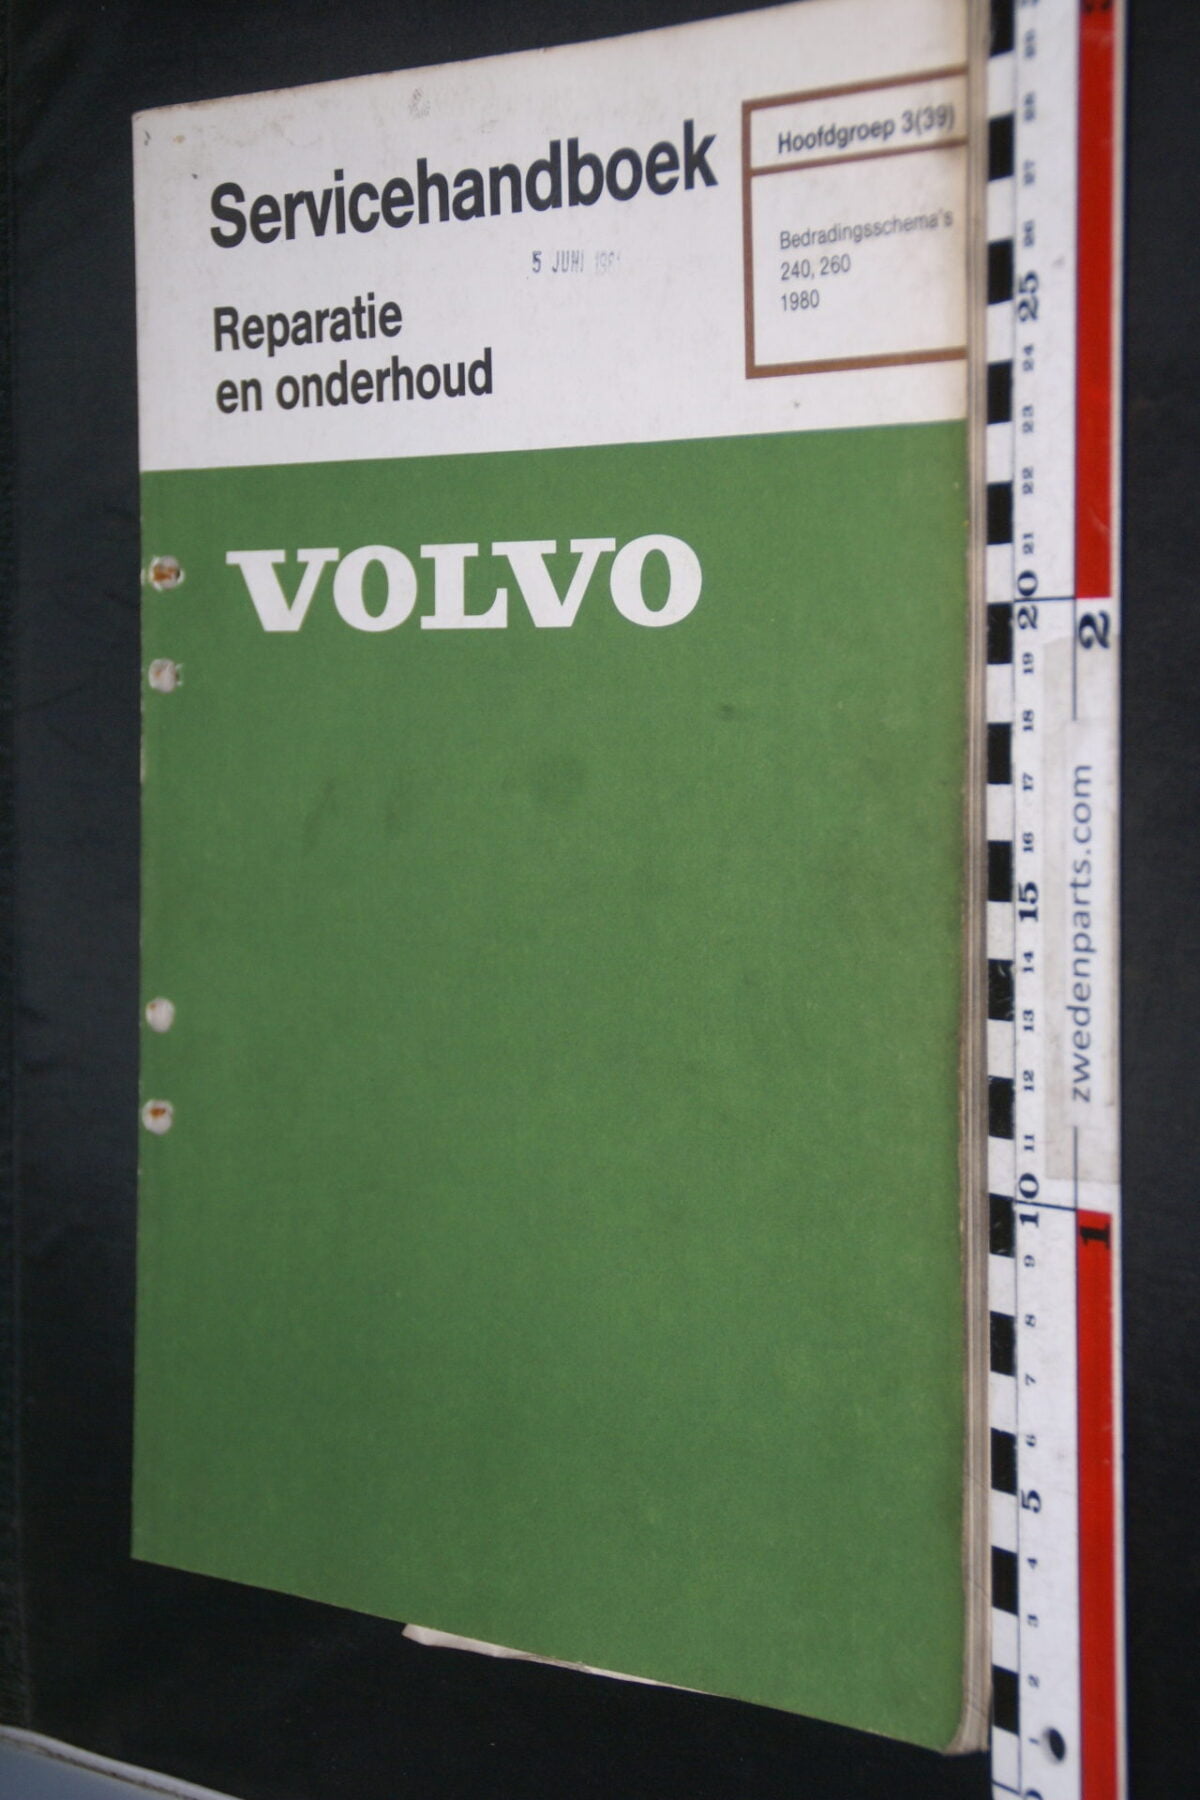 DSC08449 1981 origineel Volvo 240, 260 servicehandboek  3 (39) bedradingsschema 1 van 800 TP 30258-1